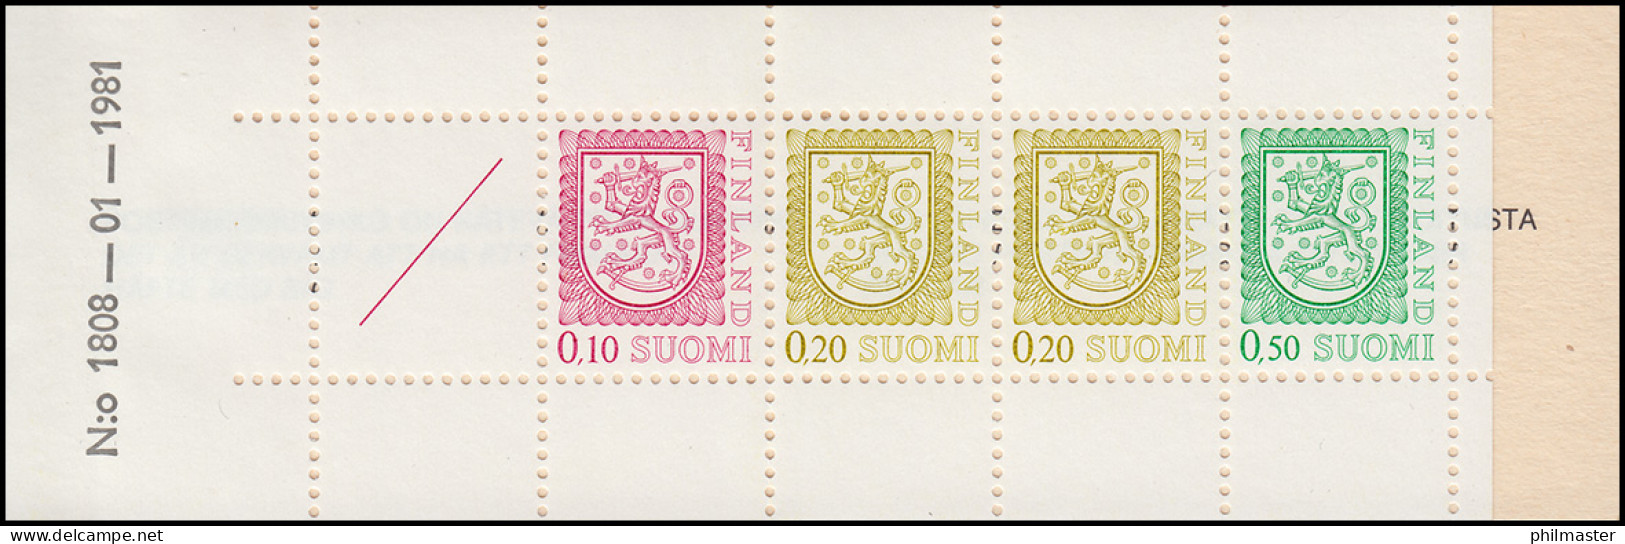 Finnland Markenheftchen 10I Staatswappen 1978, ** Postfrisch - Markenheftchen